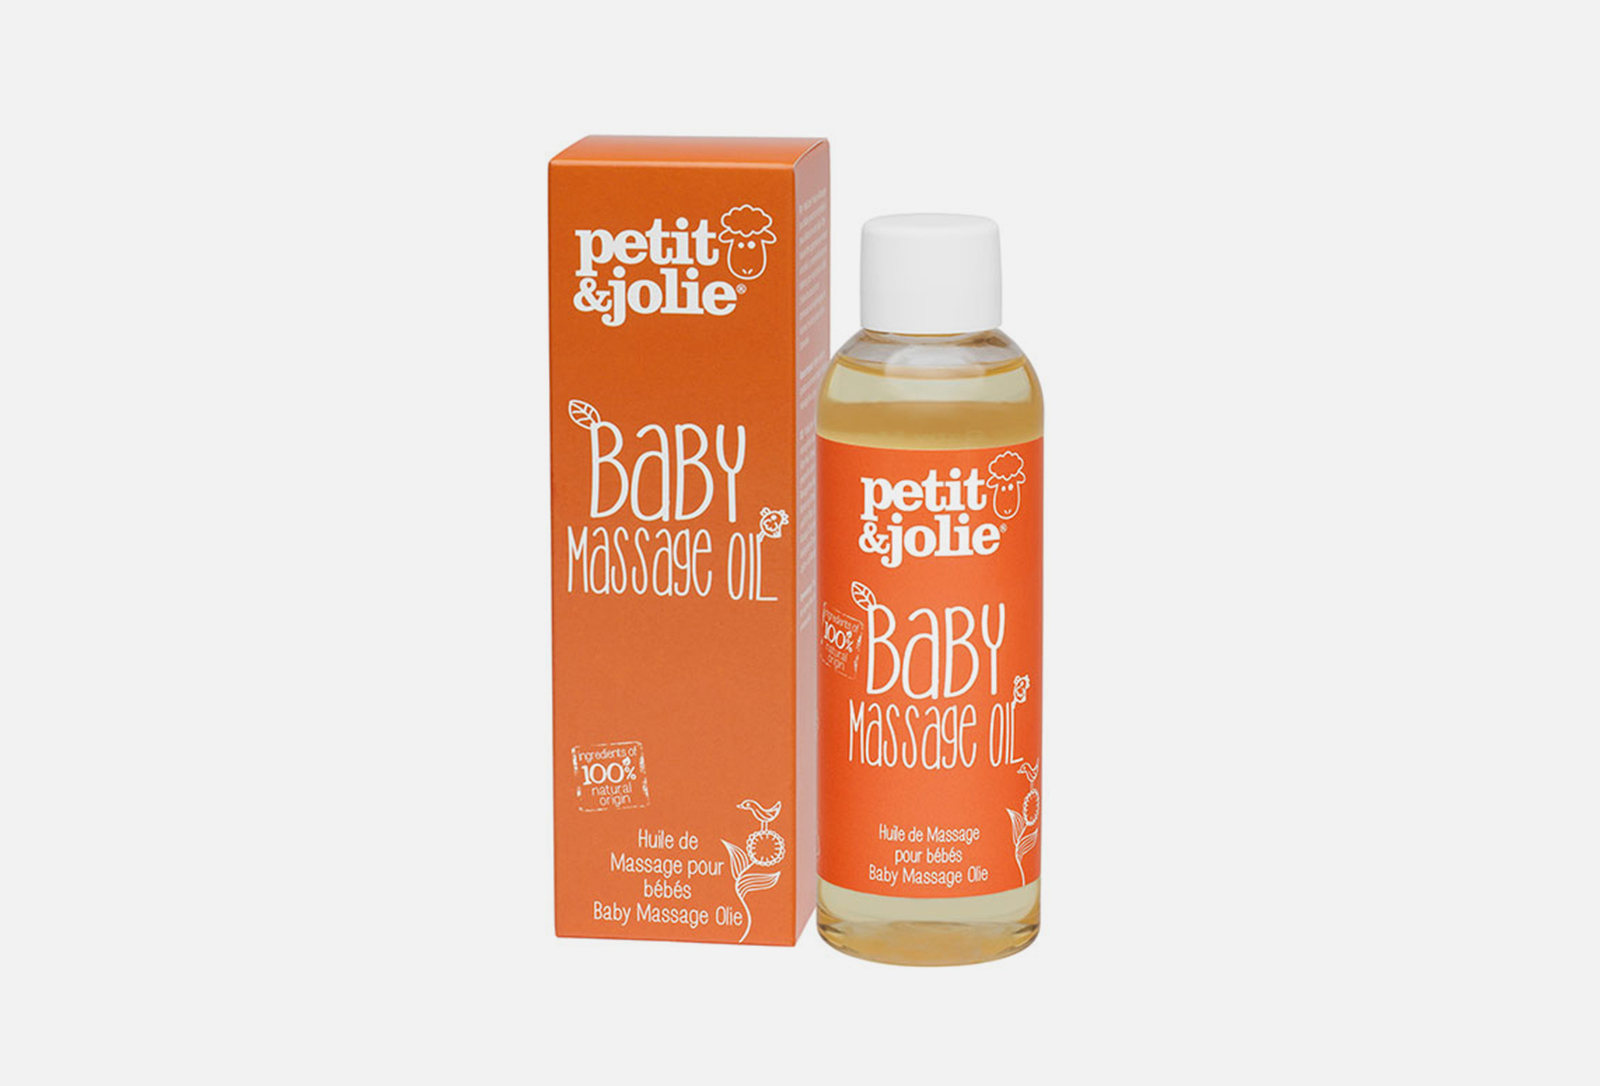 Масло для массажа новорожденных. Массажное масло для грудничка. Масло для увлажнения кожи новорожденного. Пэти. Масло для новорожденных для массажа из аптеки.